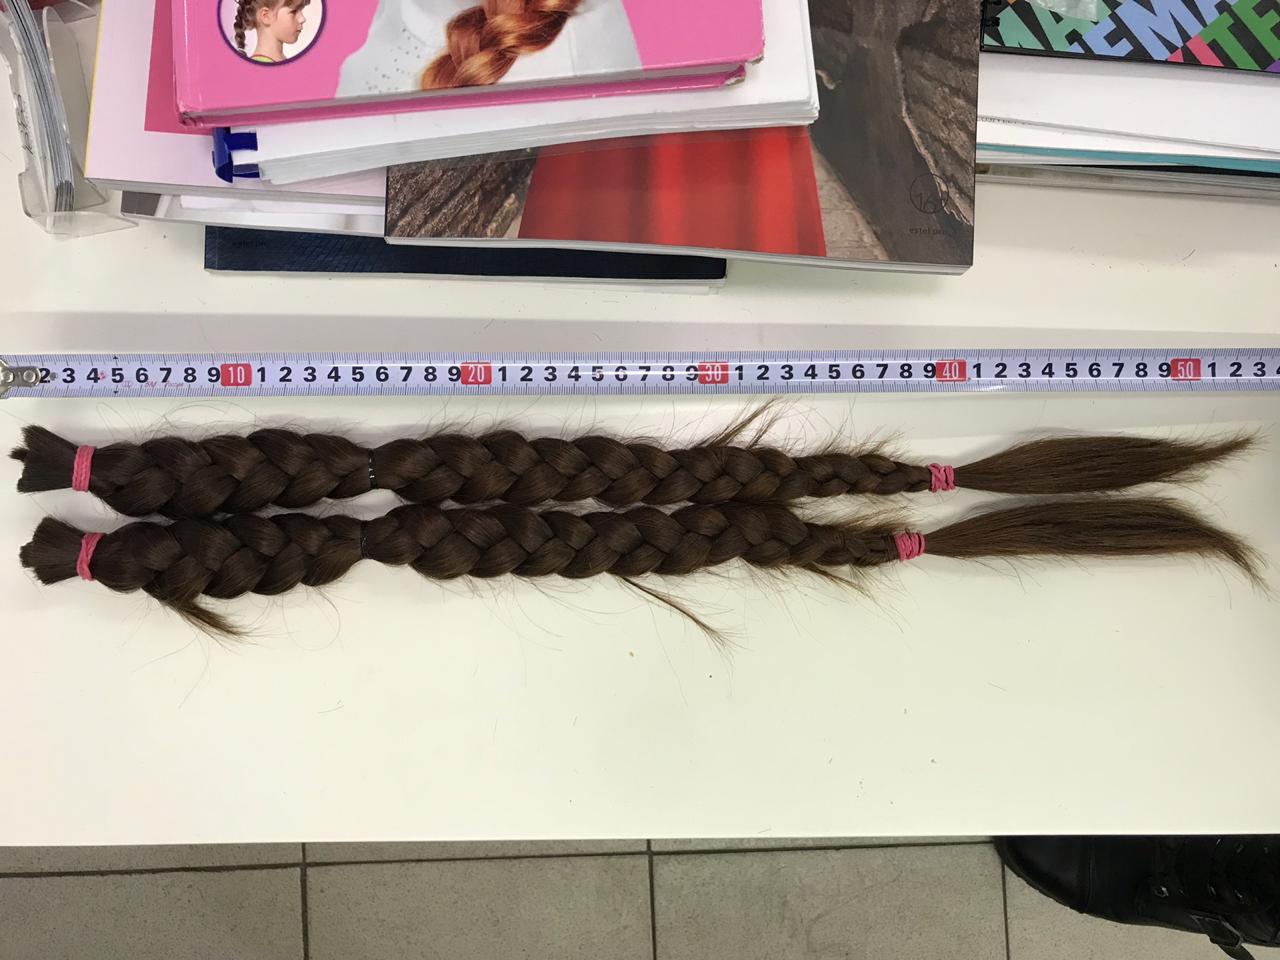 За сколько можно продать волосы в украине